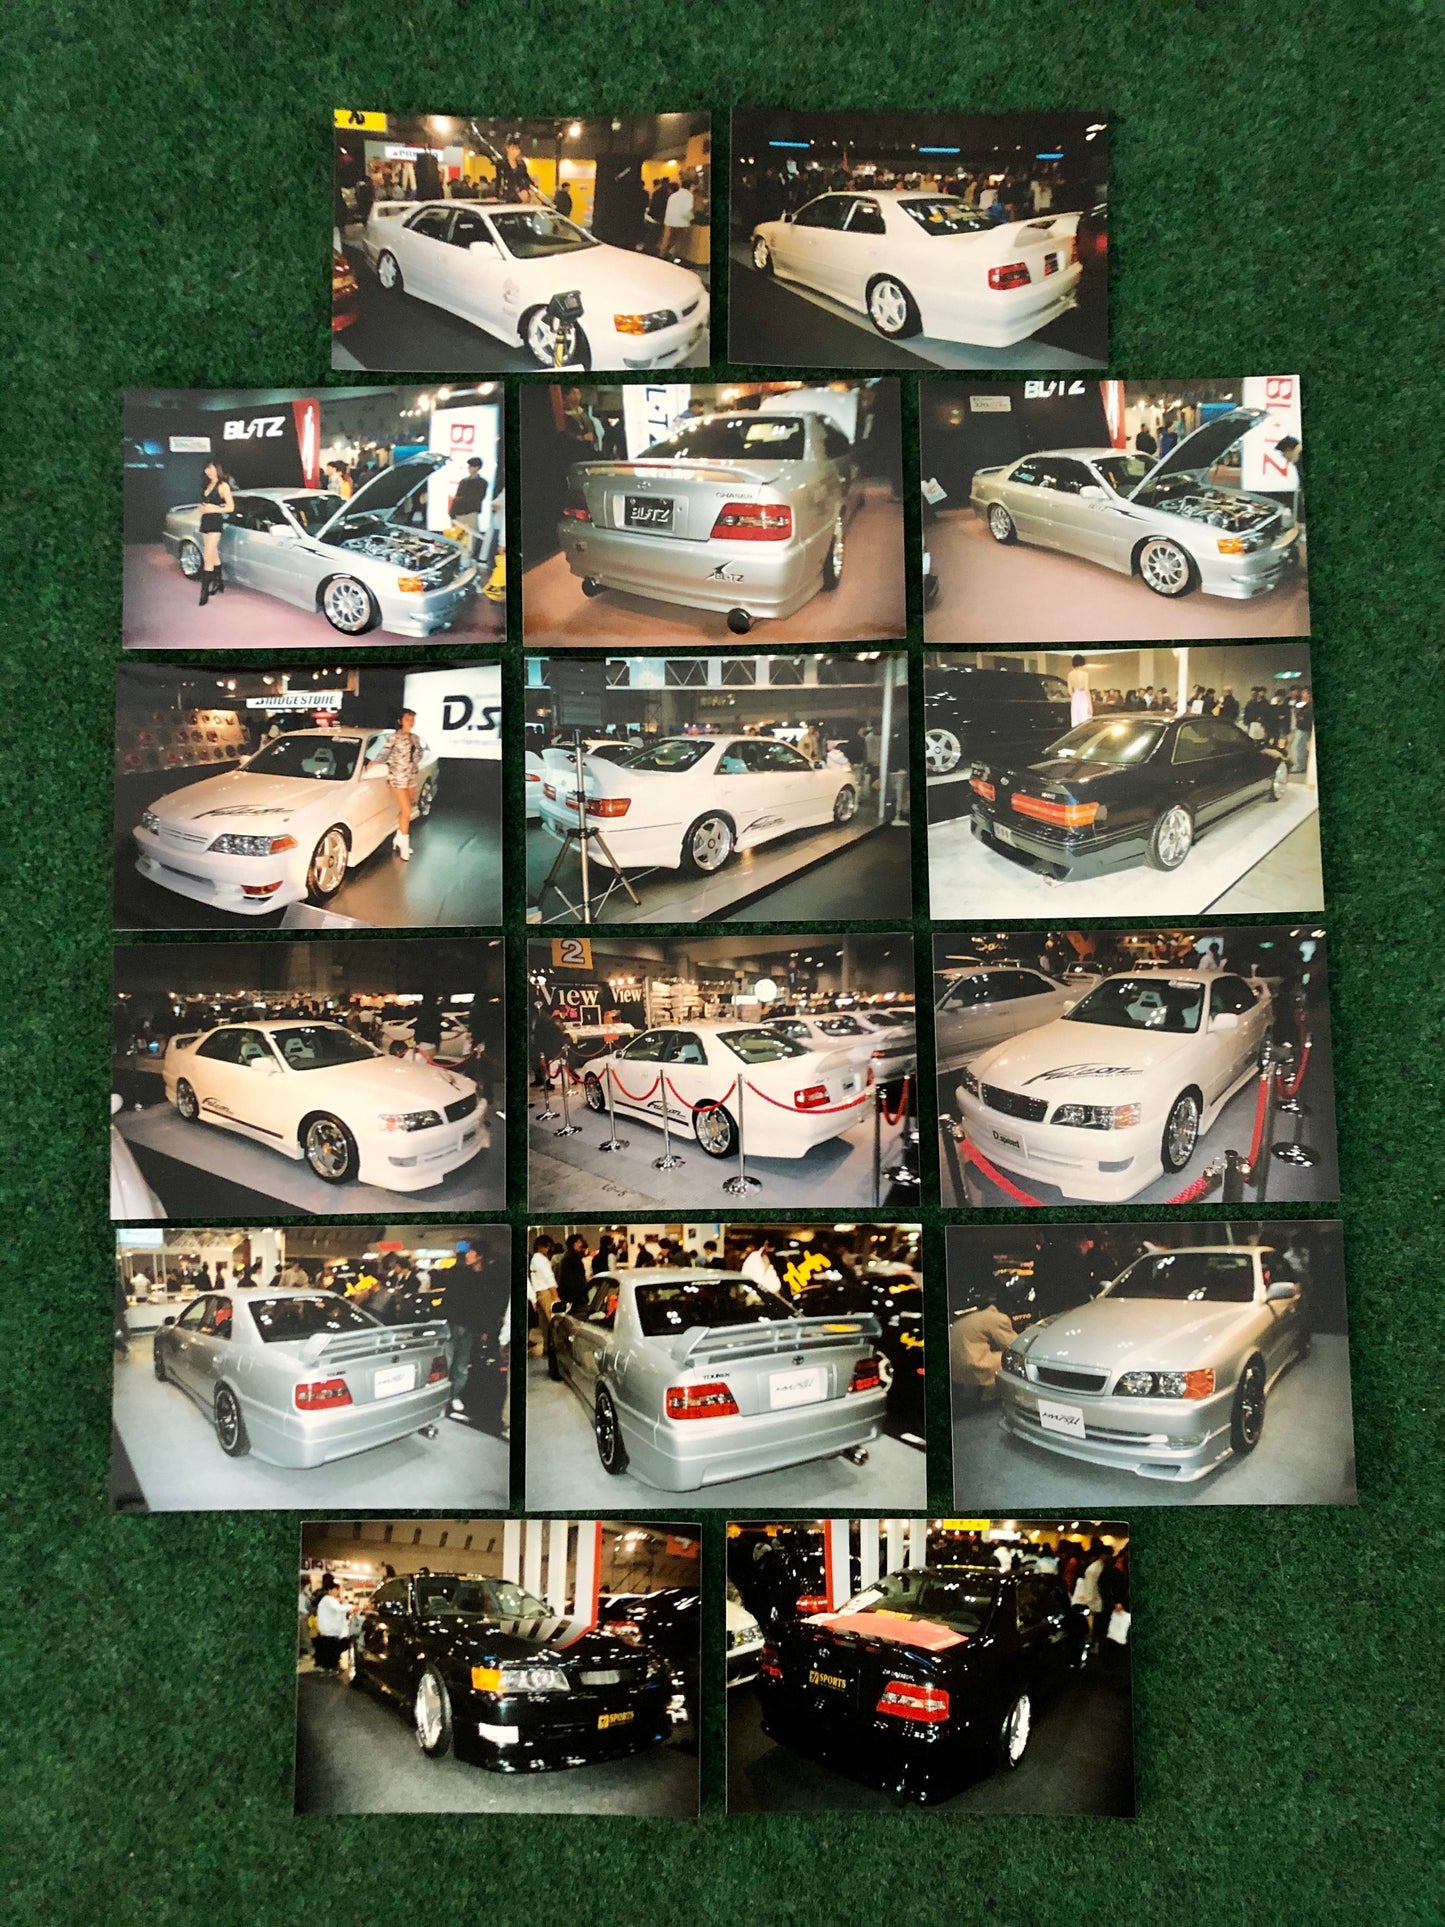 1997 Tokyo Auto Salon - Toyota Chaser JZX100 Photos